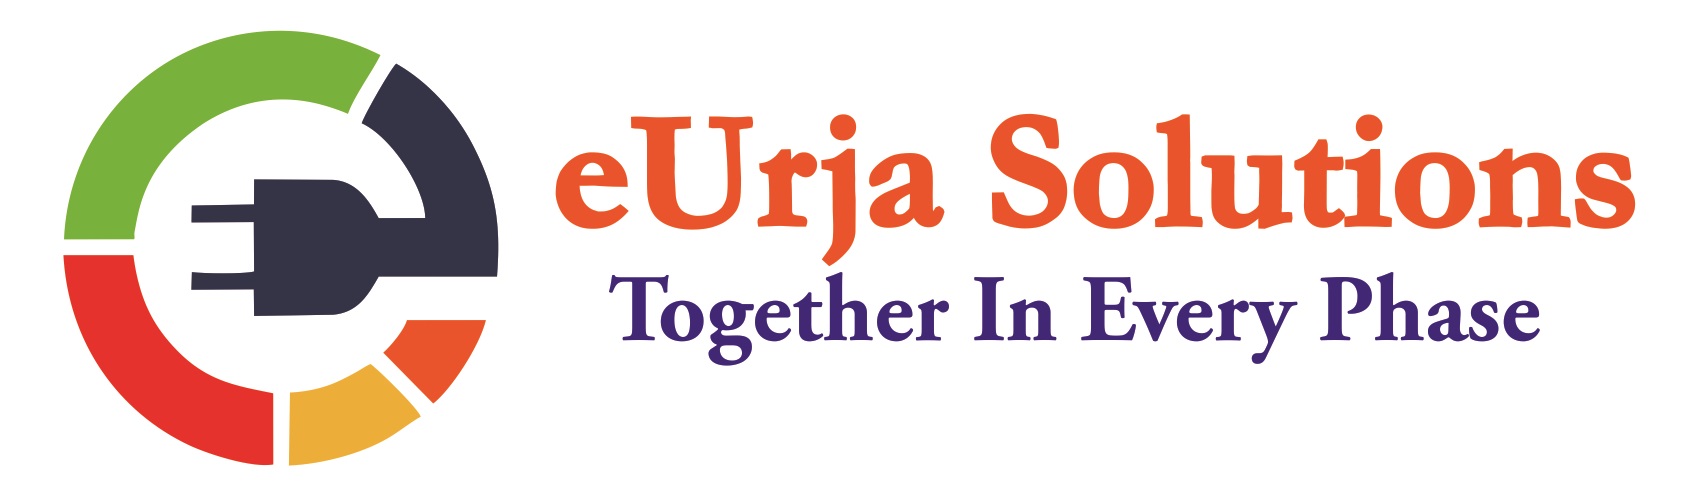 eUrja Solutions